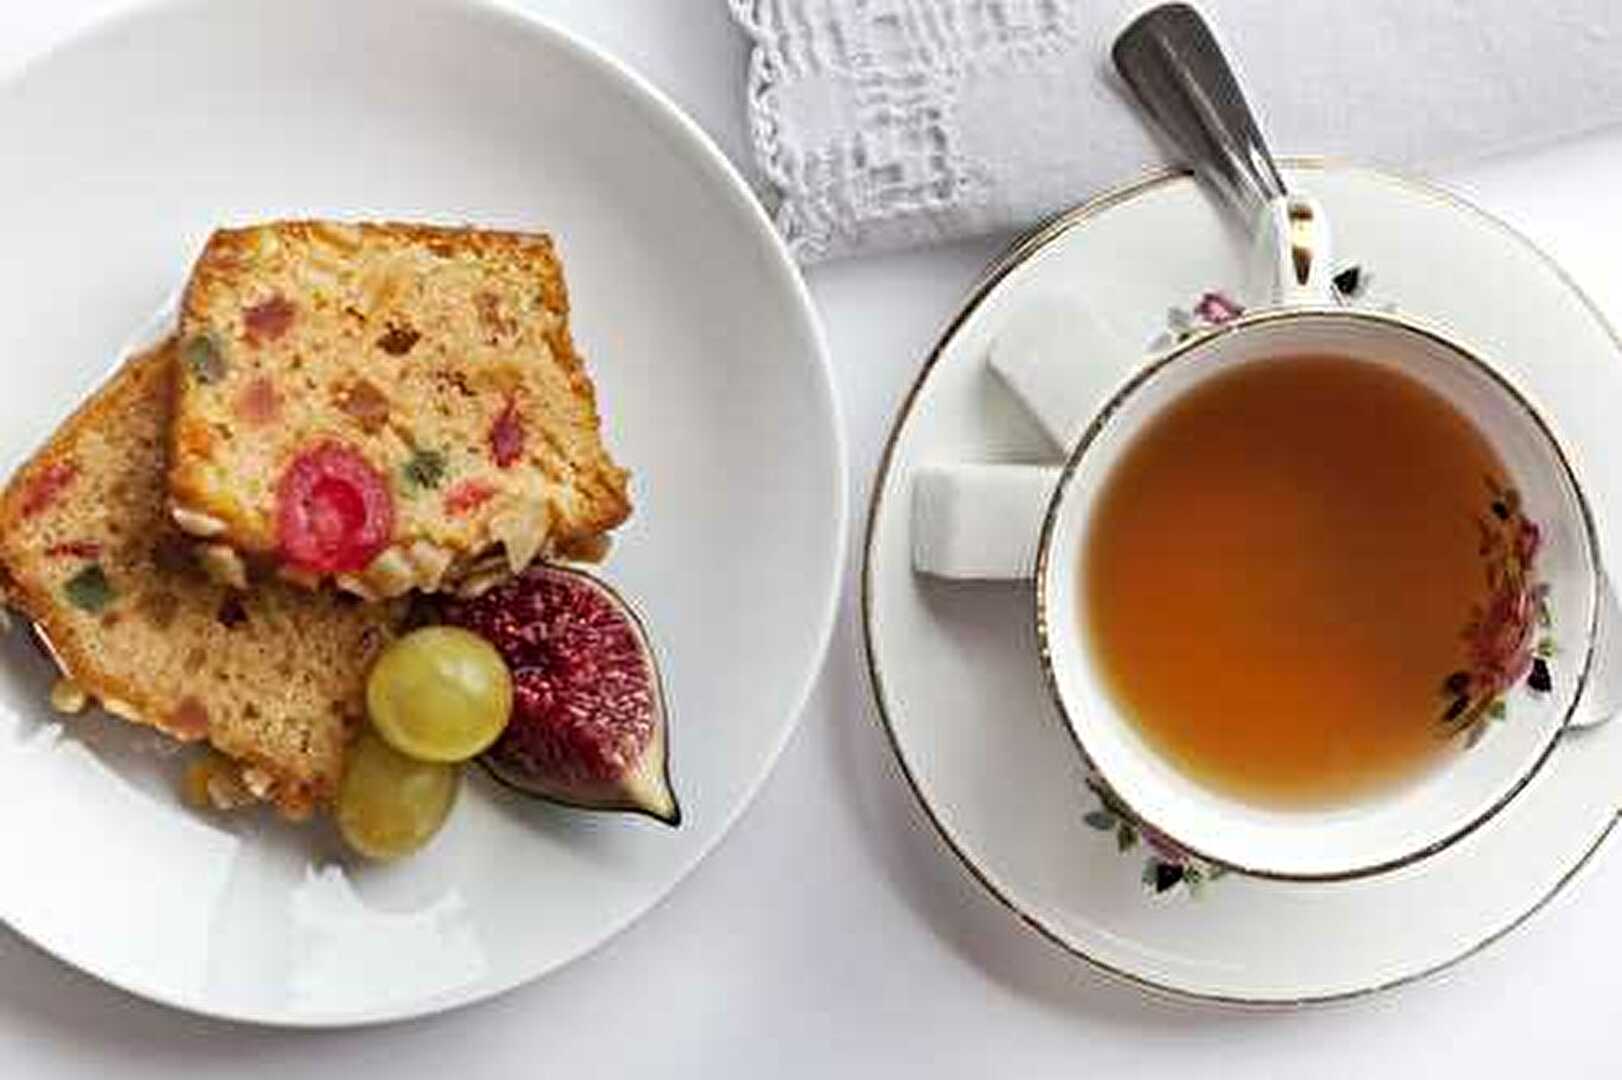 Cake Délicieux aux Fruits Confits et Raisins au thé